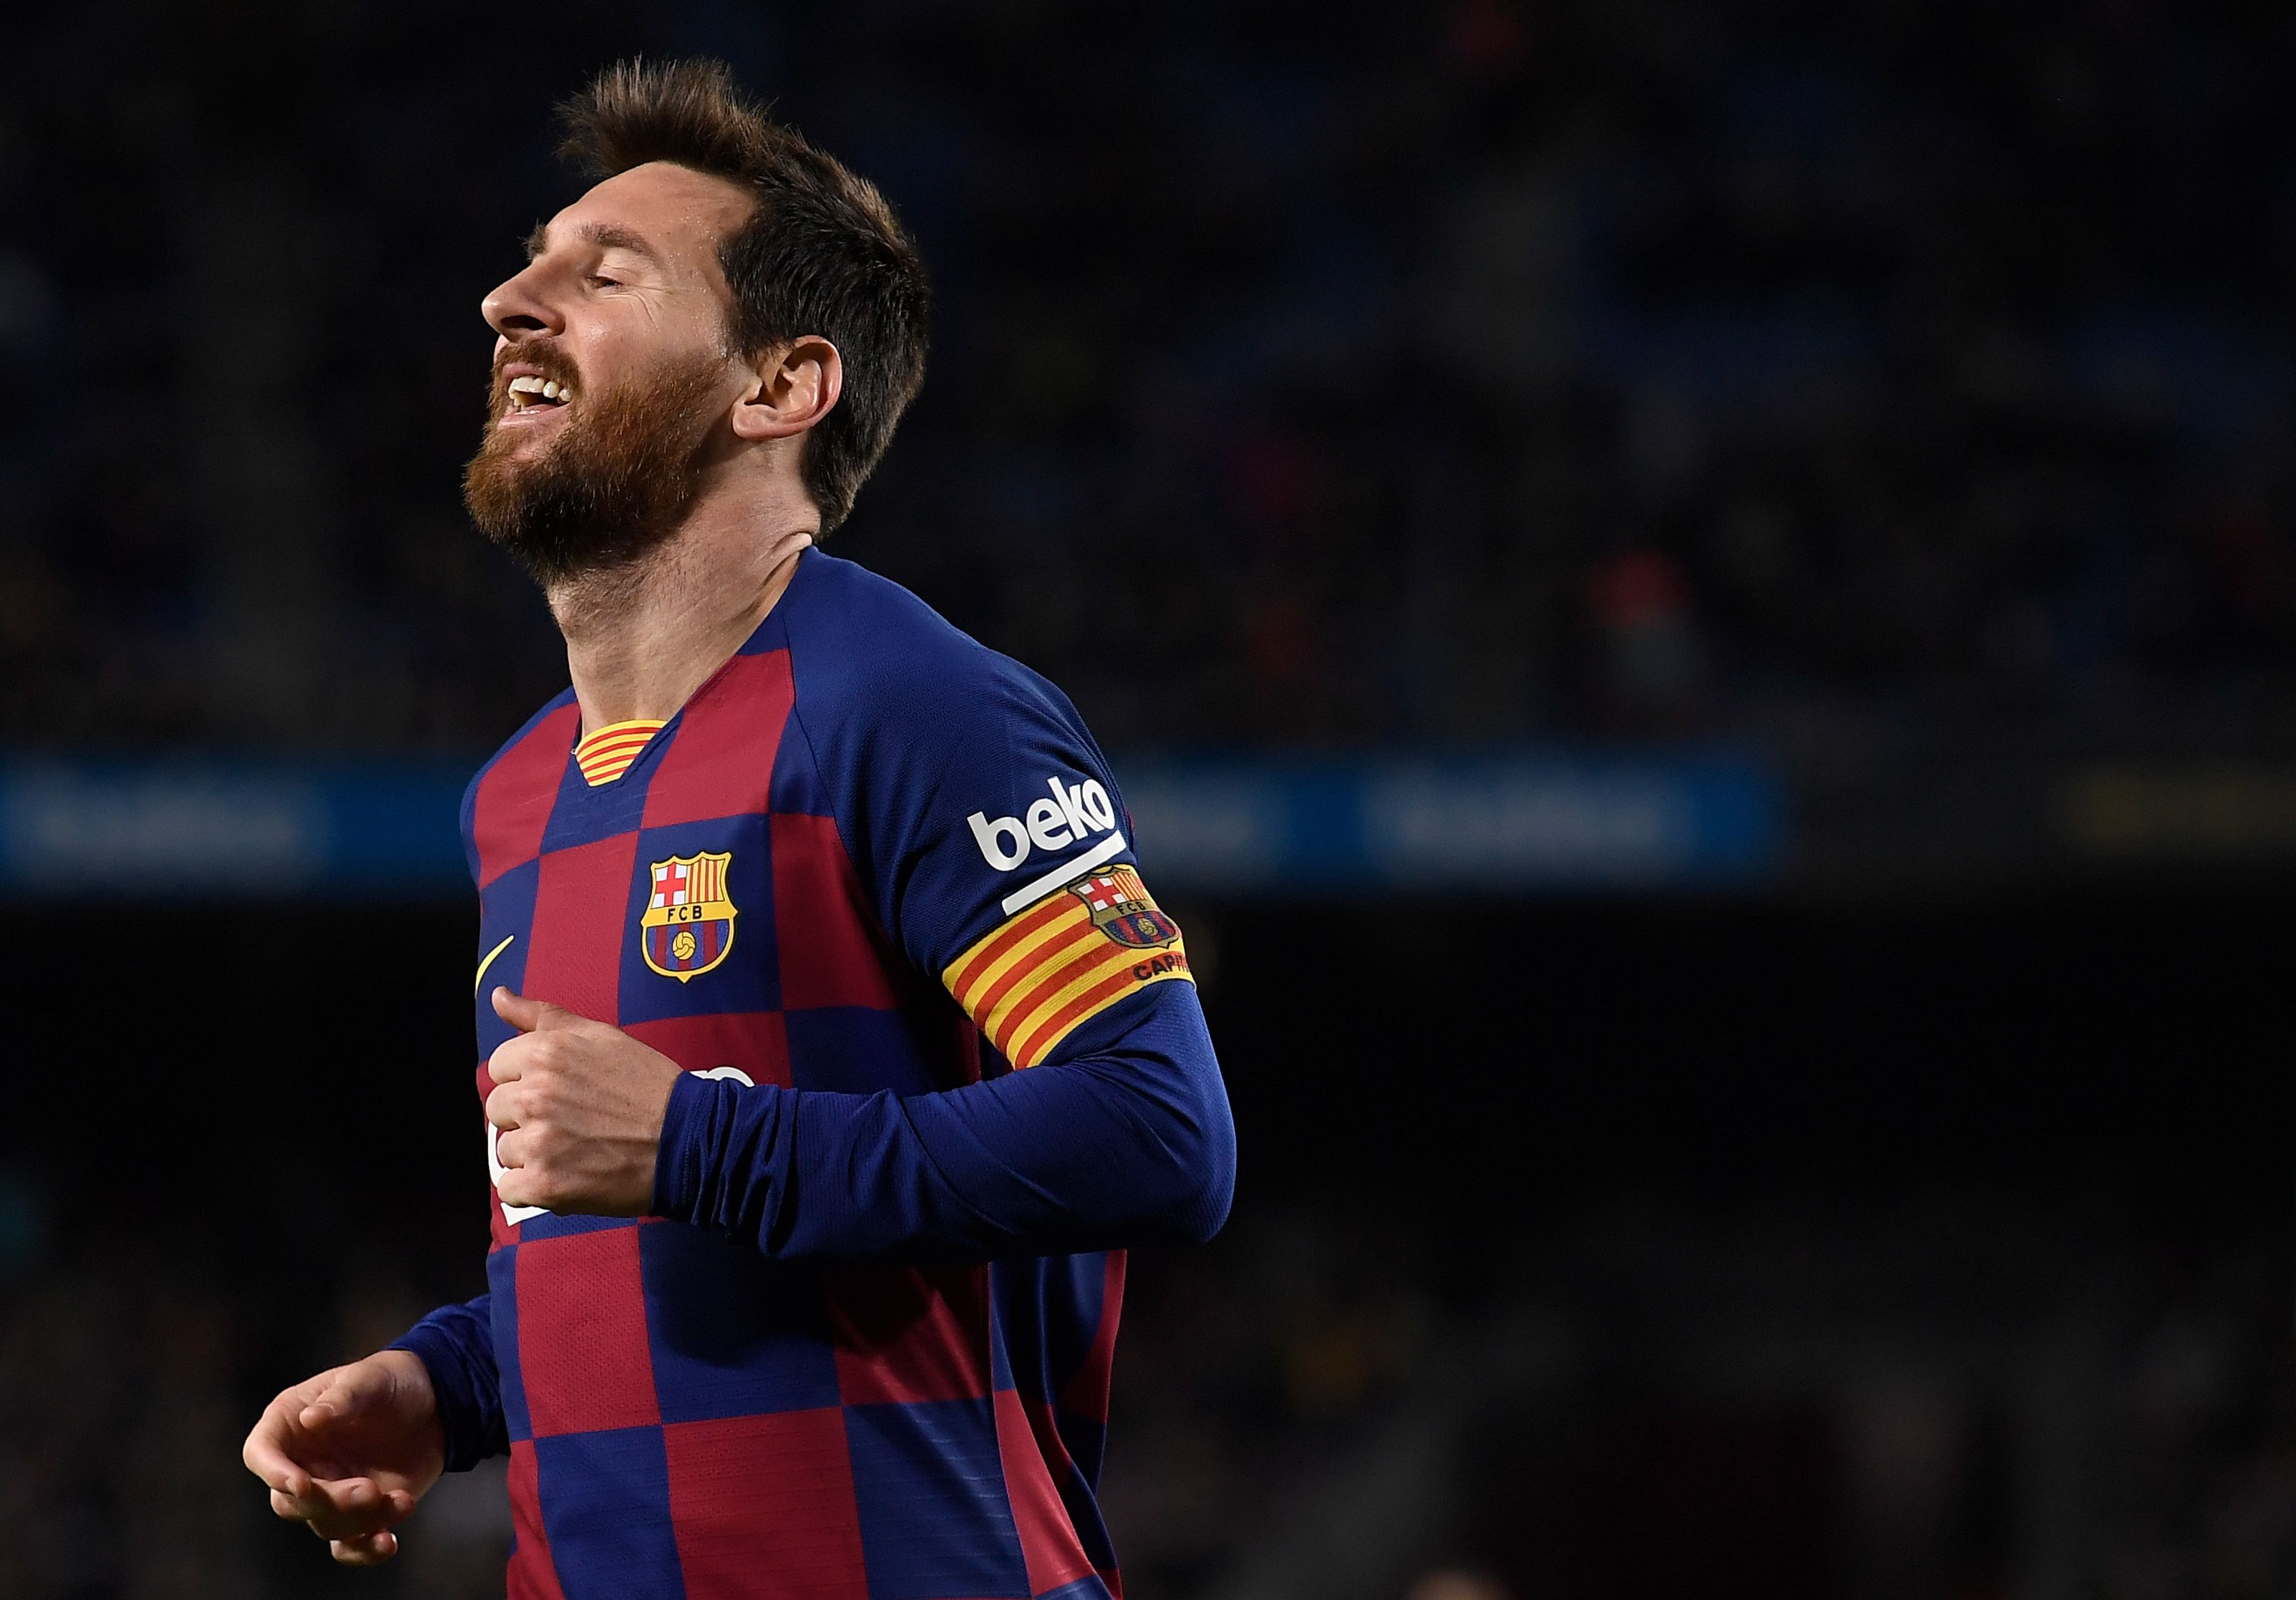 El astro argentino Lionel Messi sigue arriba en los salarios de los futbolistas. (Foto Prensa Libre: AFP)